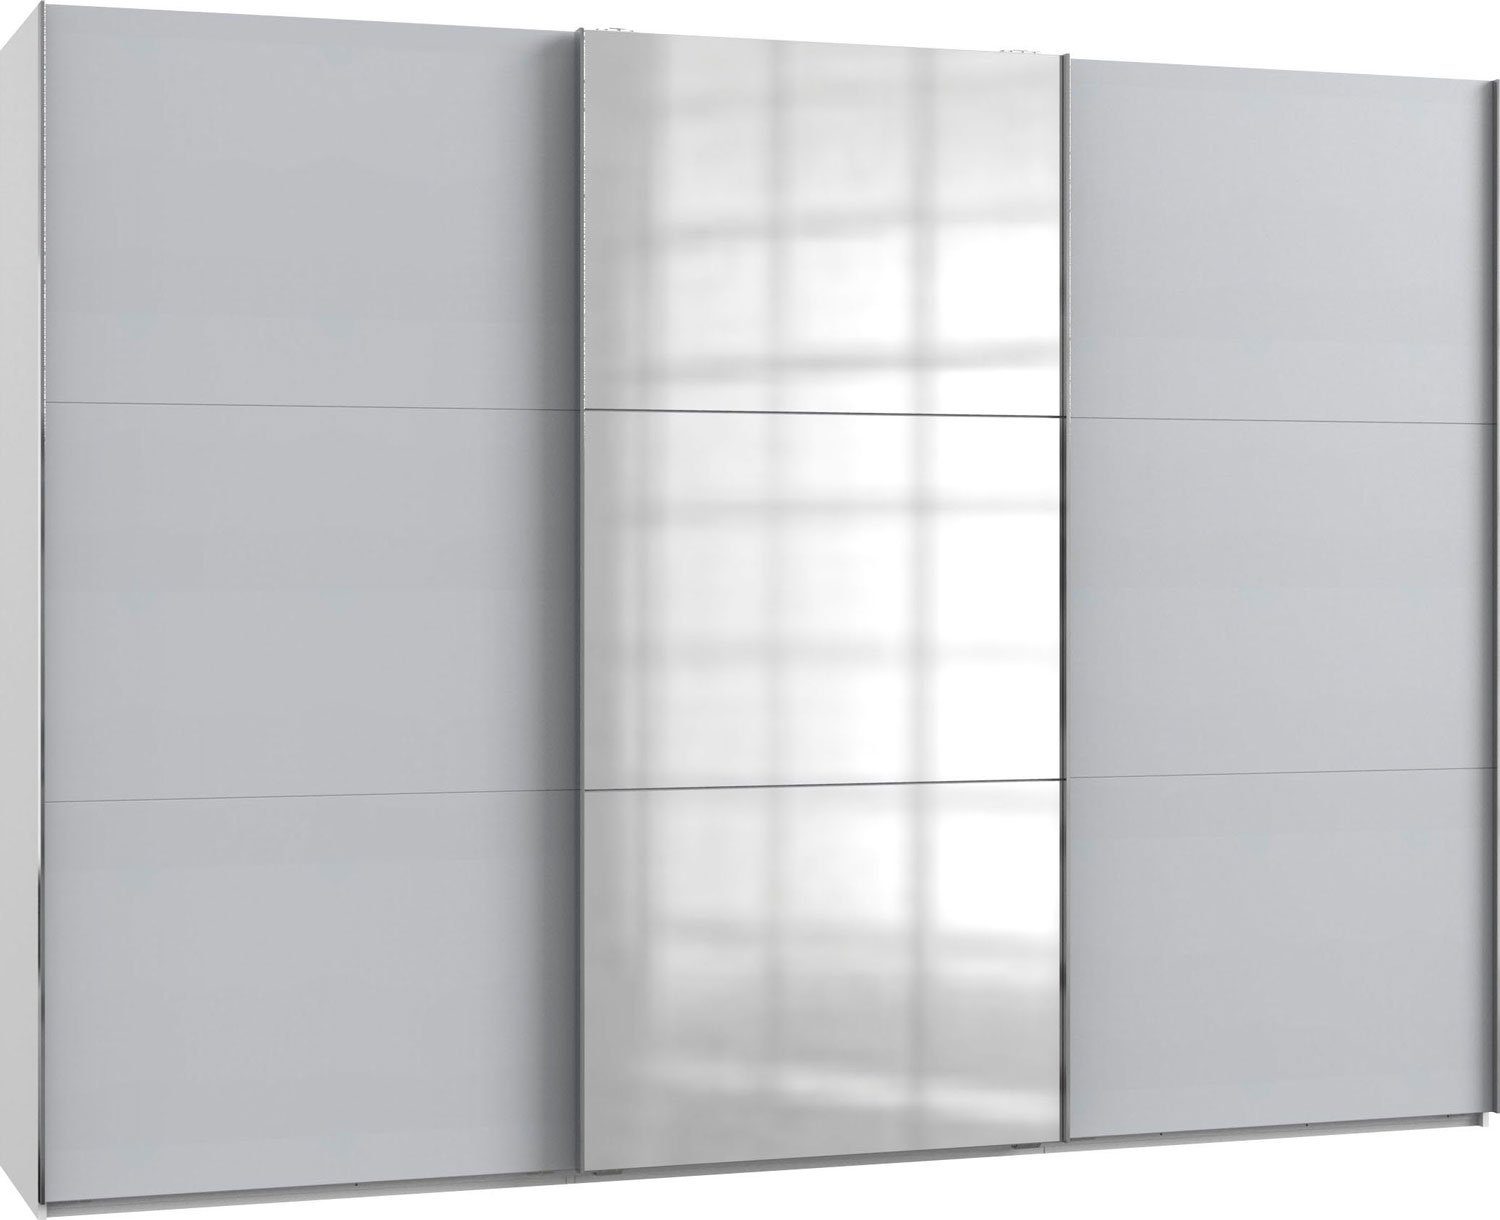 Wimex Dreh-/Schwebetürenschrank Level (Level, Schwebetürenschrank) 300x65x216cm weiß lichtgrau